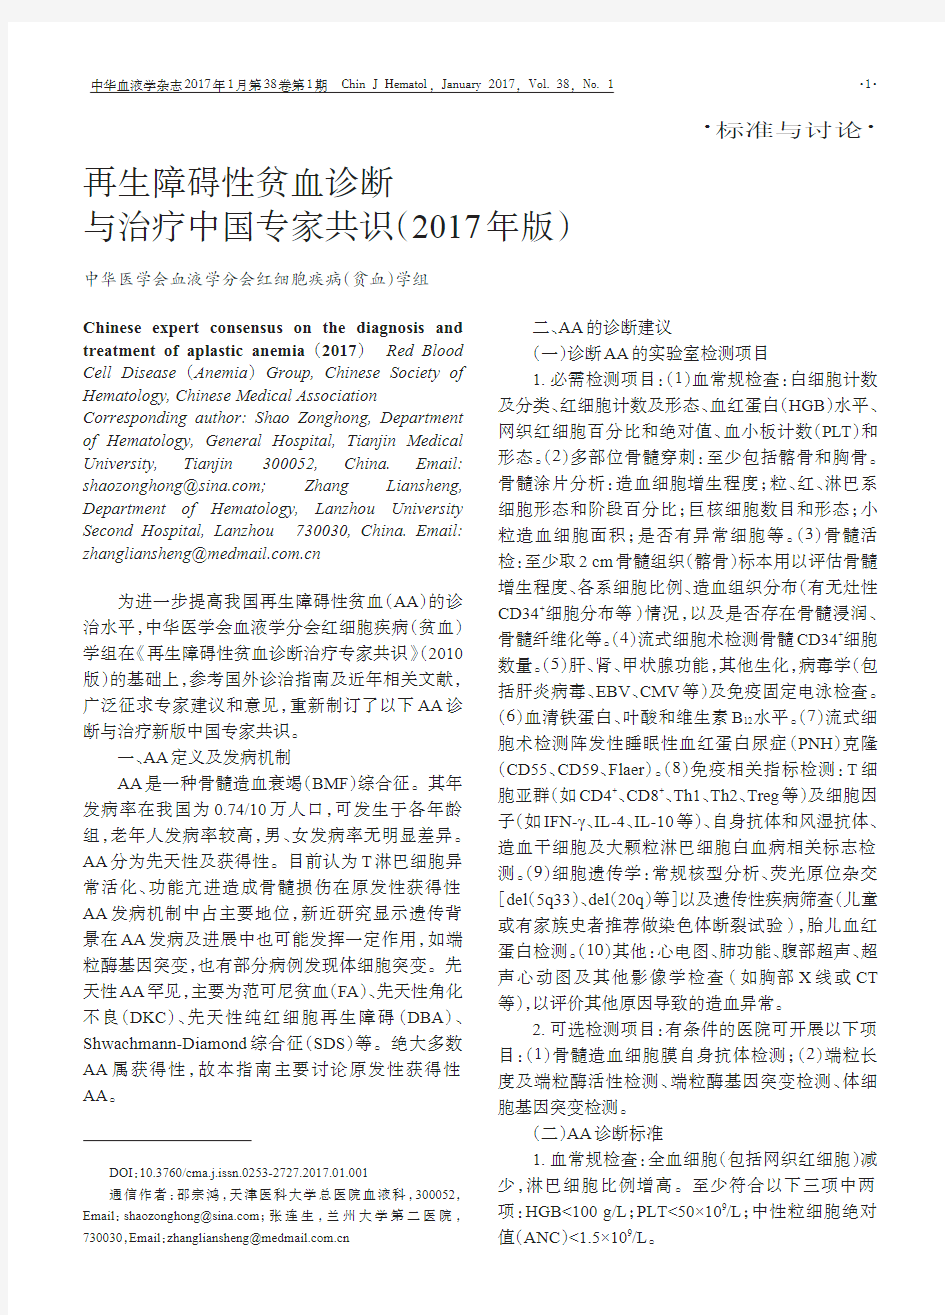 再生障碍性贫血诊断与治疗中国专家共识(2017年版)